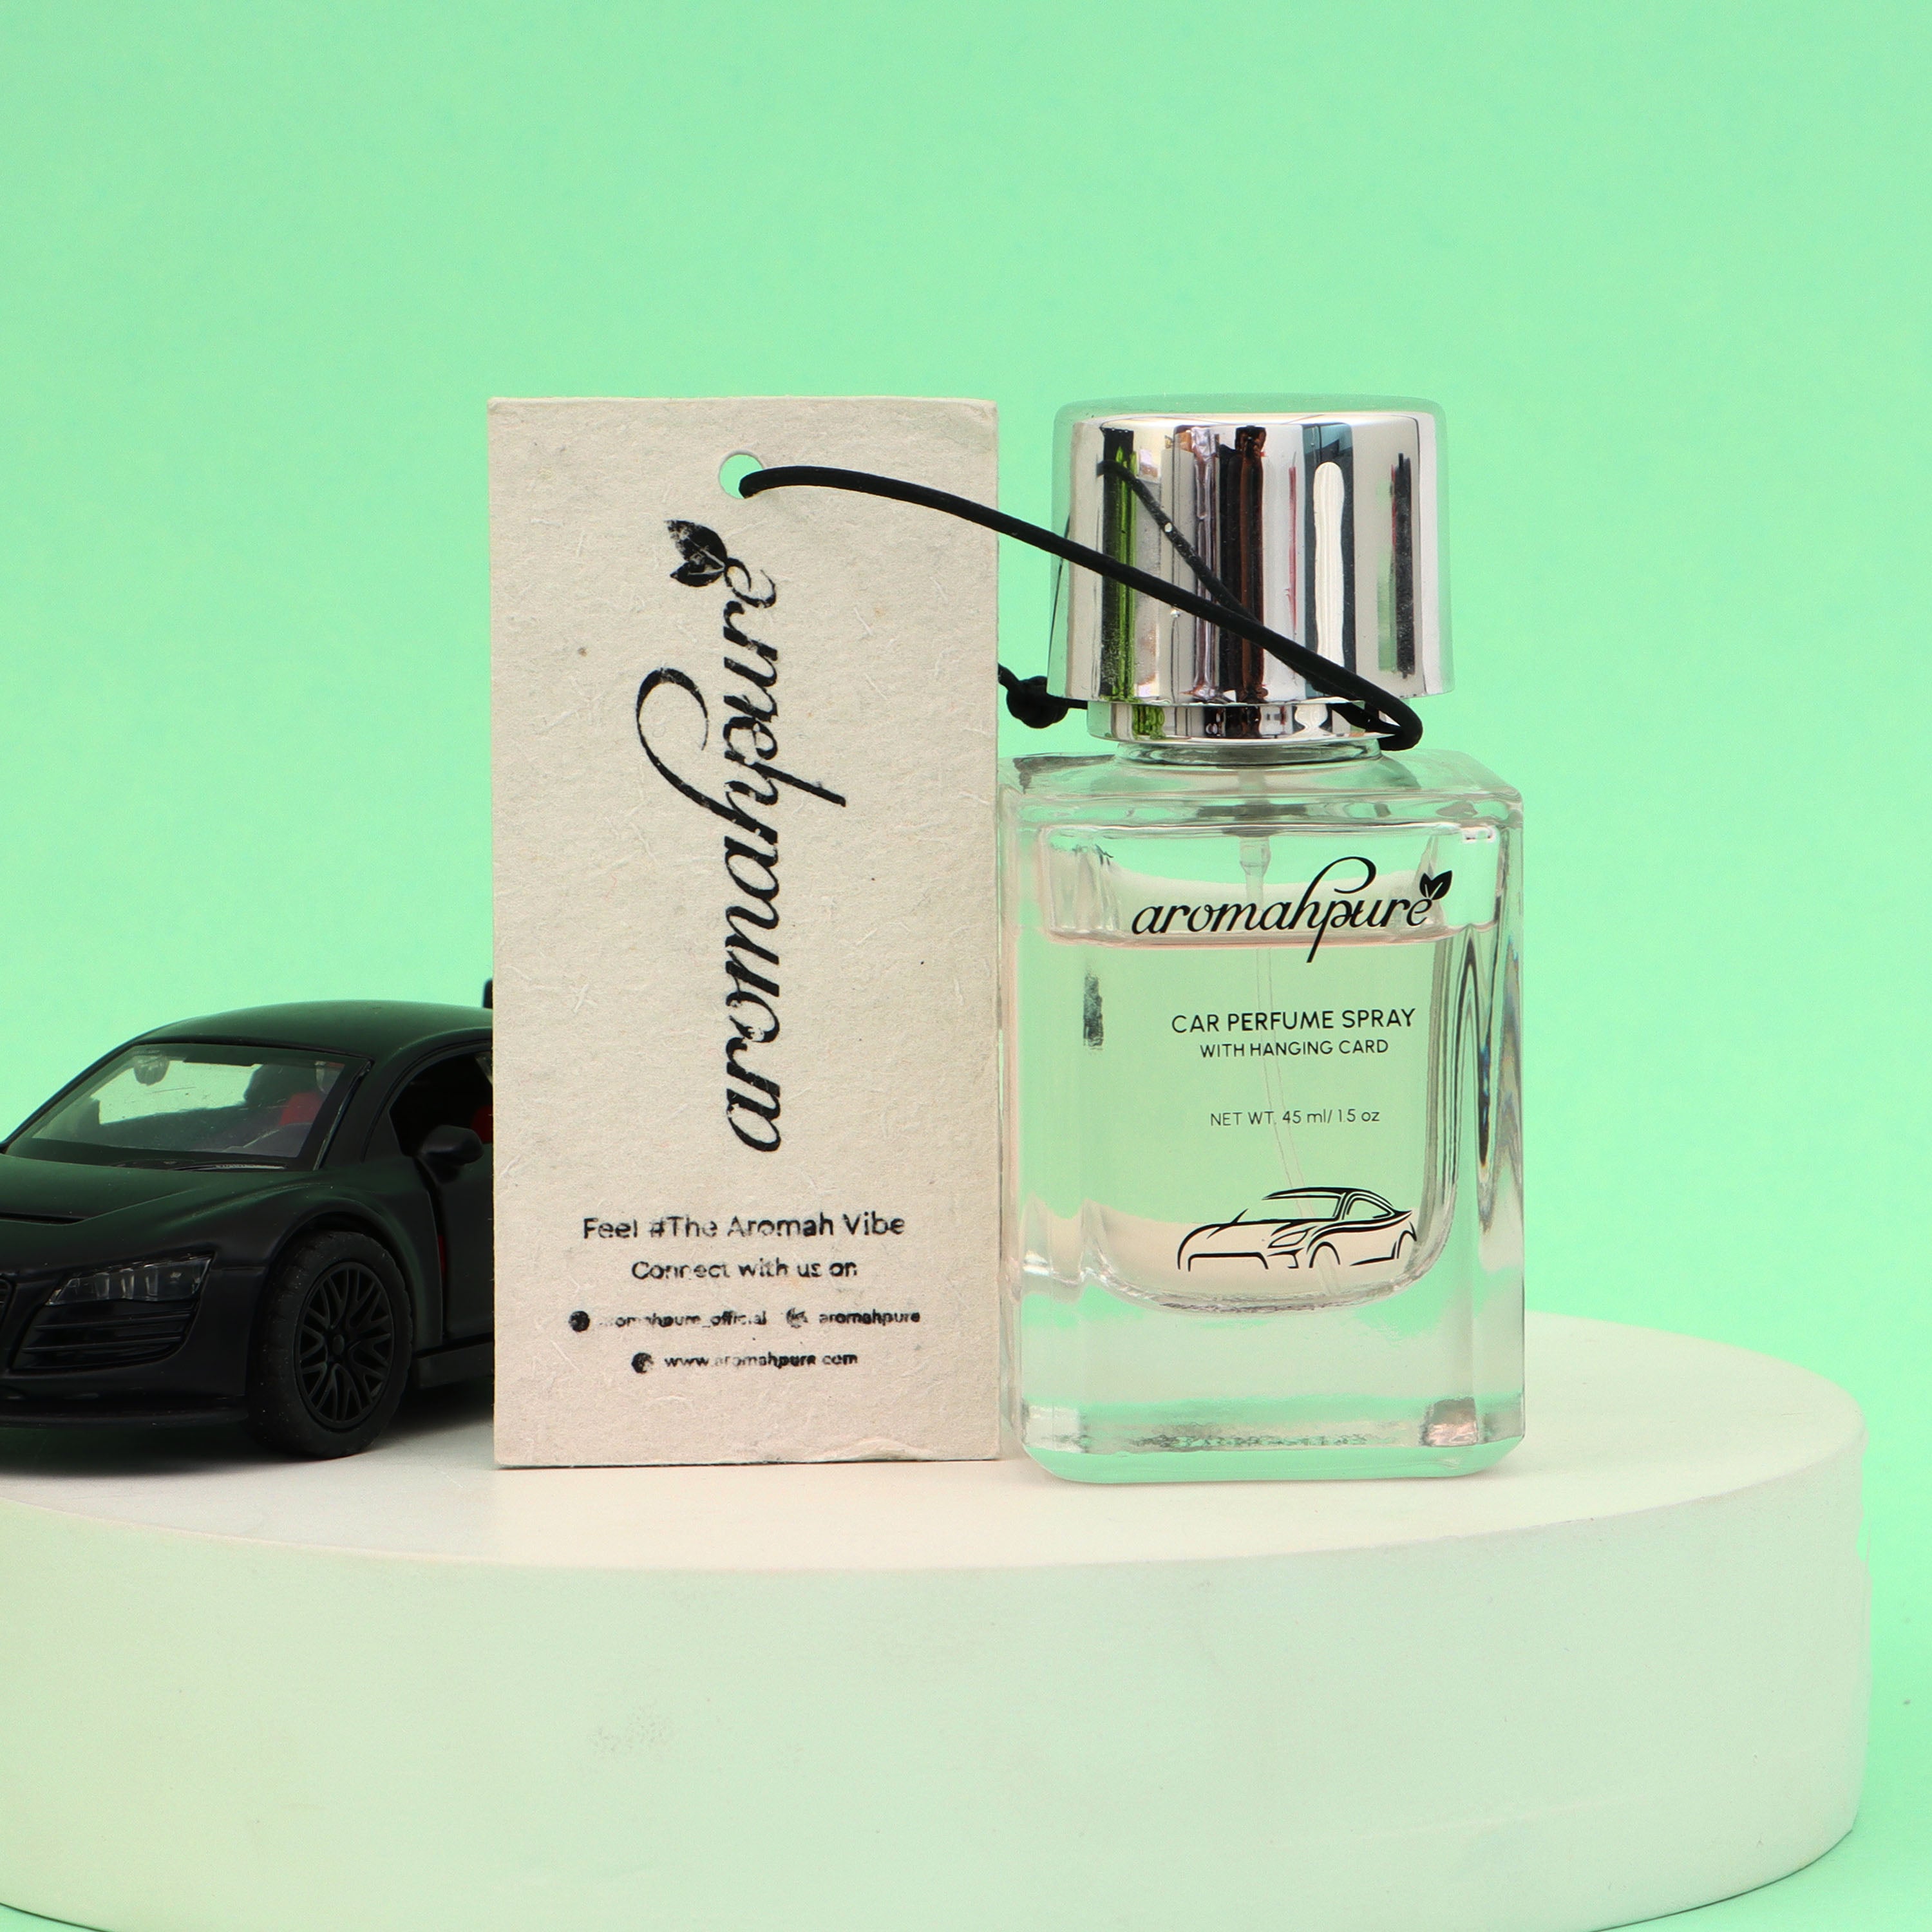  RANVOO Smart Car Air Freshener Good Smell, Long